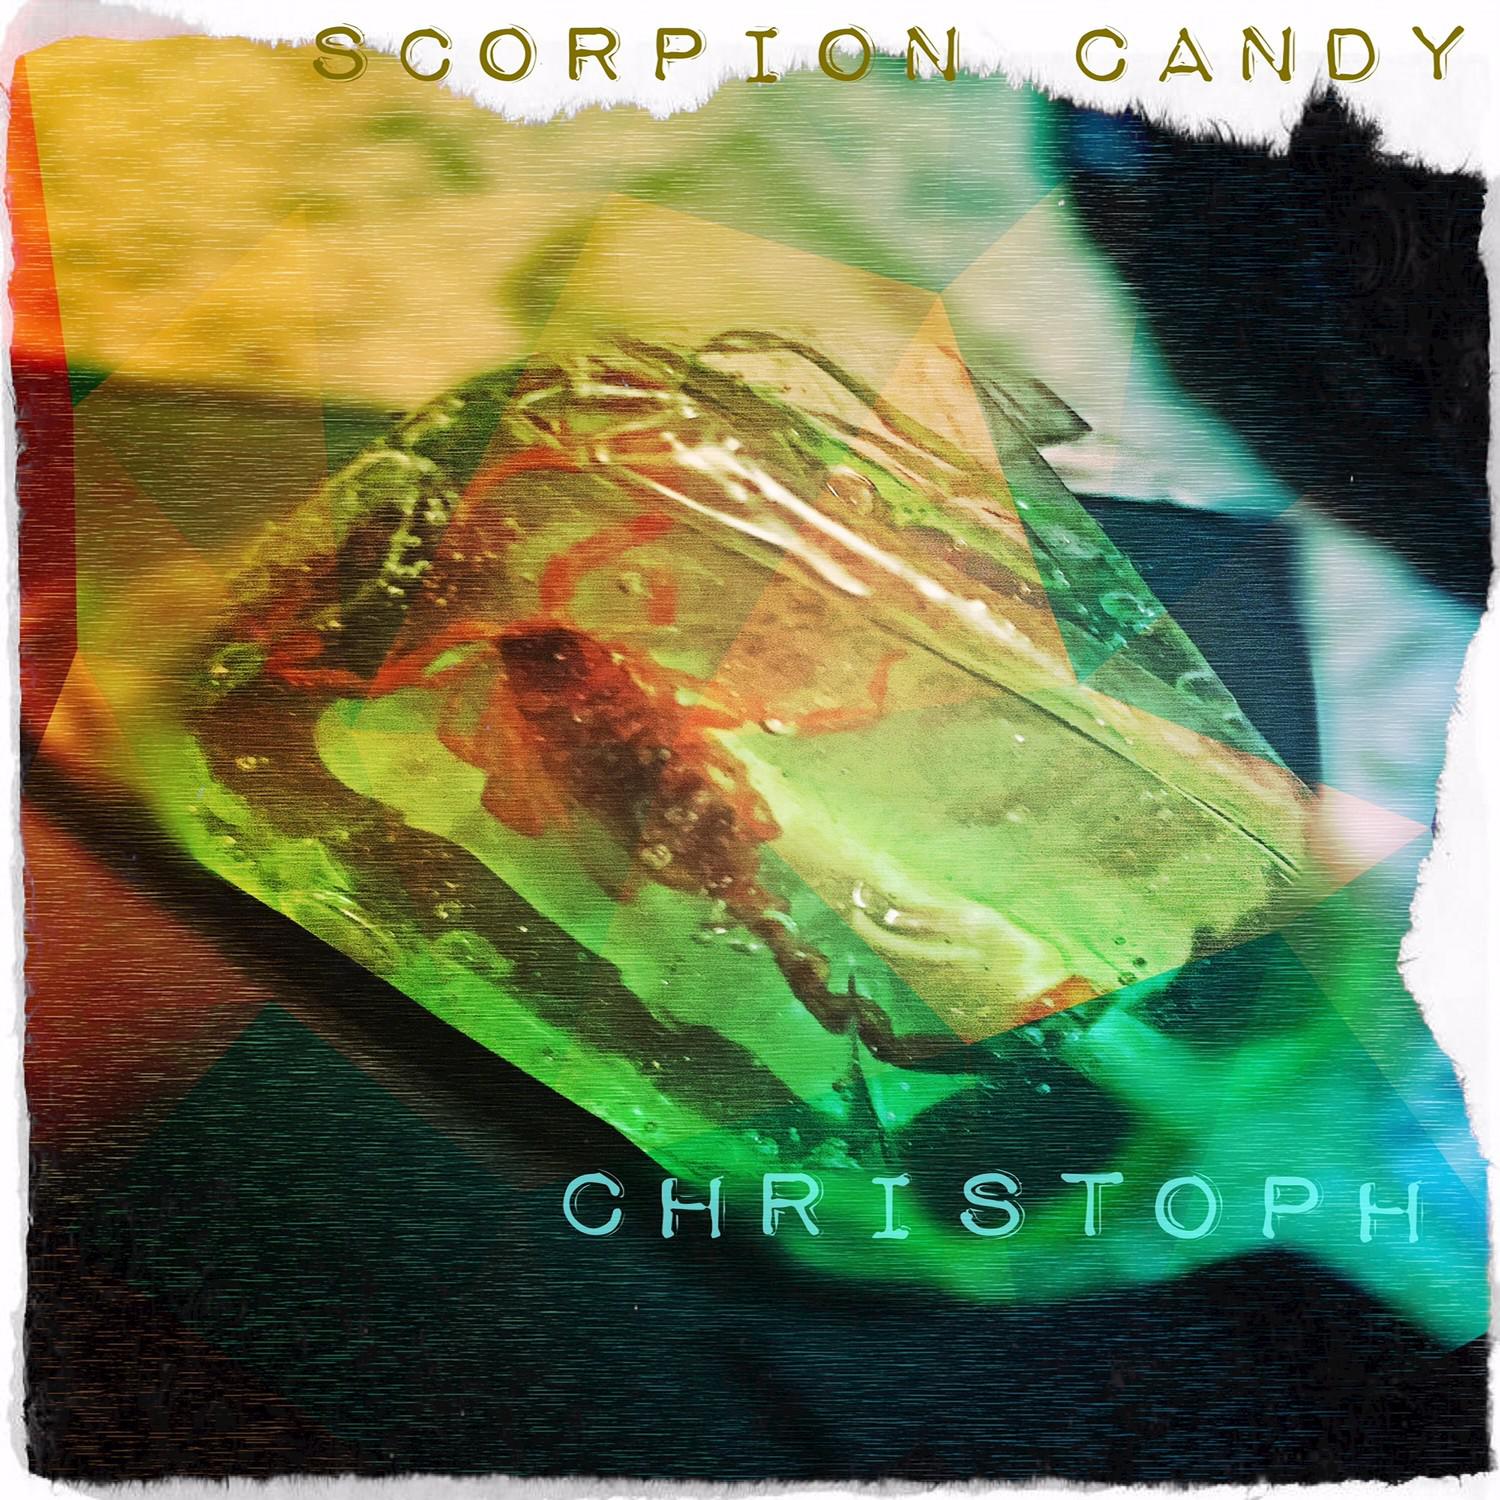 Scorpion Candy